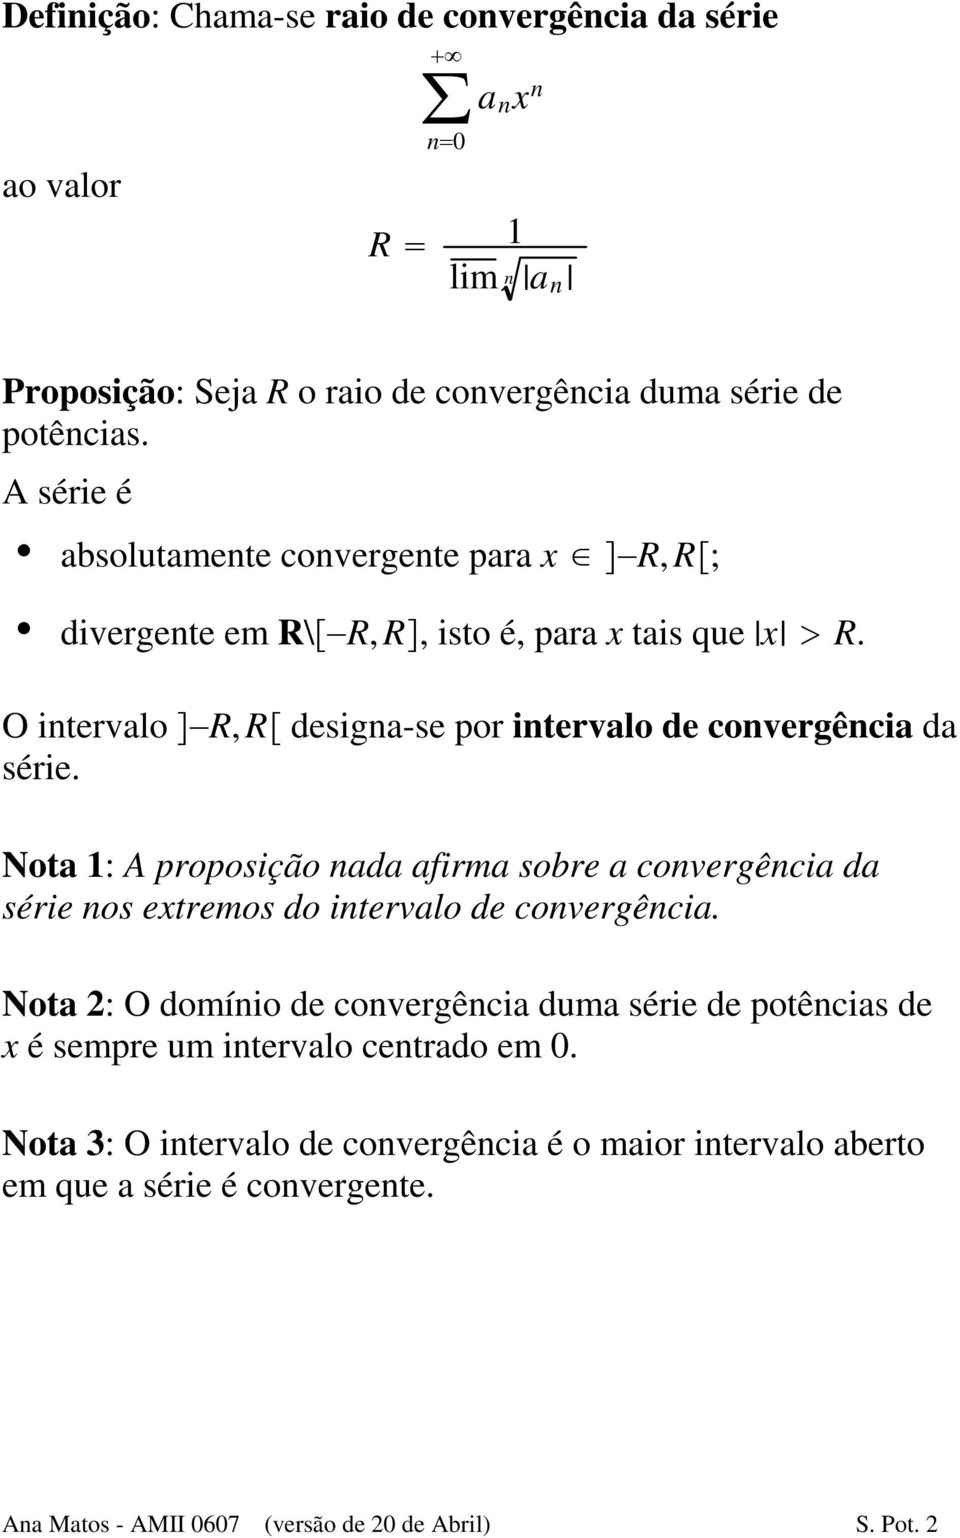 Nota 1: A proposição nada afirma sobre a convergência da série nos extremos do intervalo de convergência.